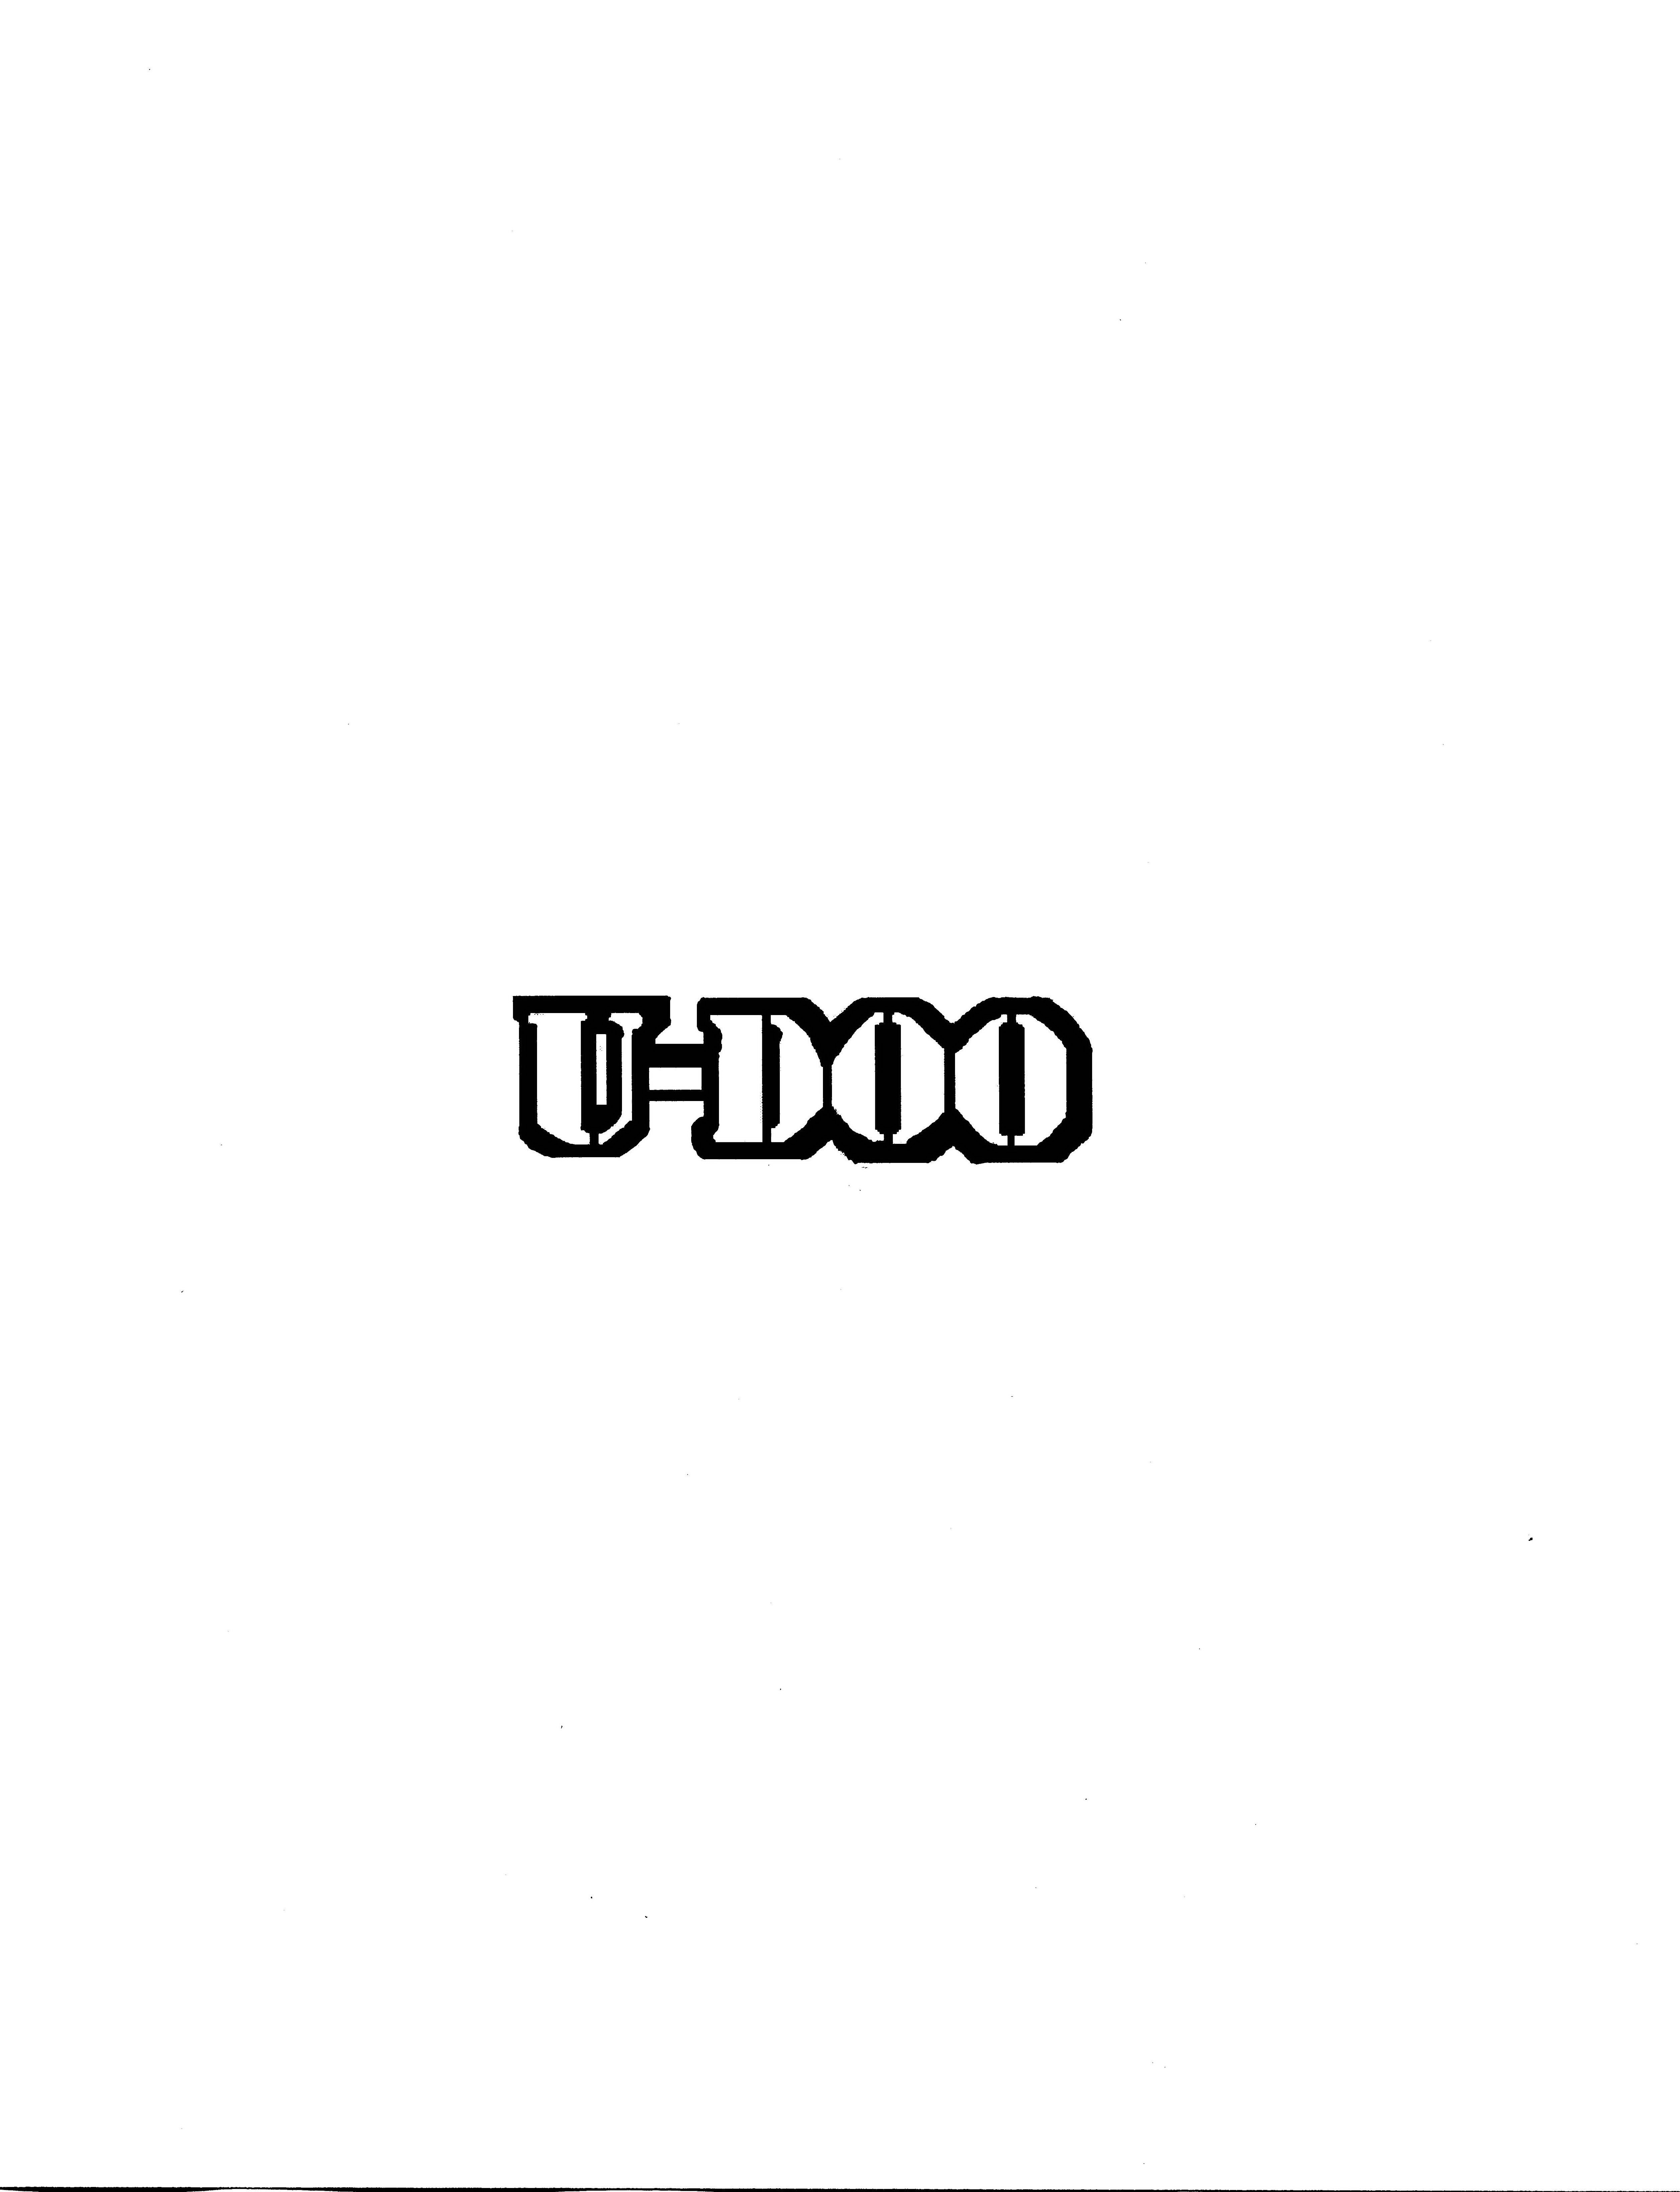 U-DOO